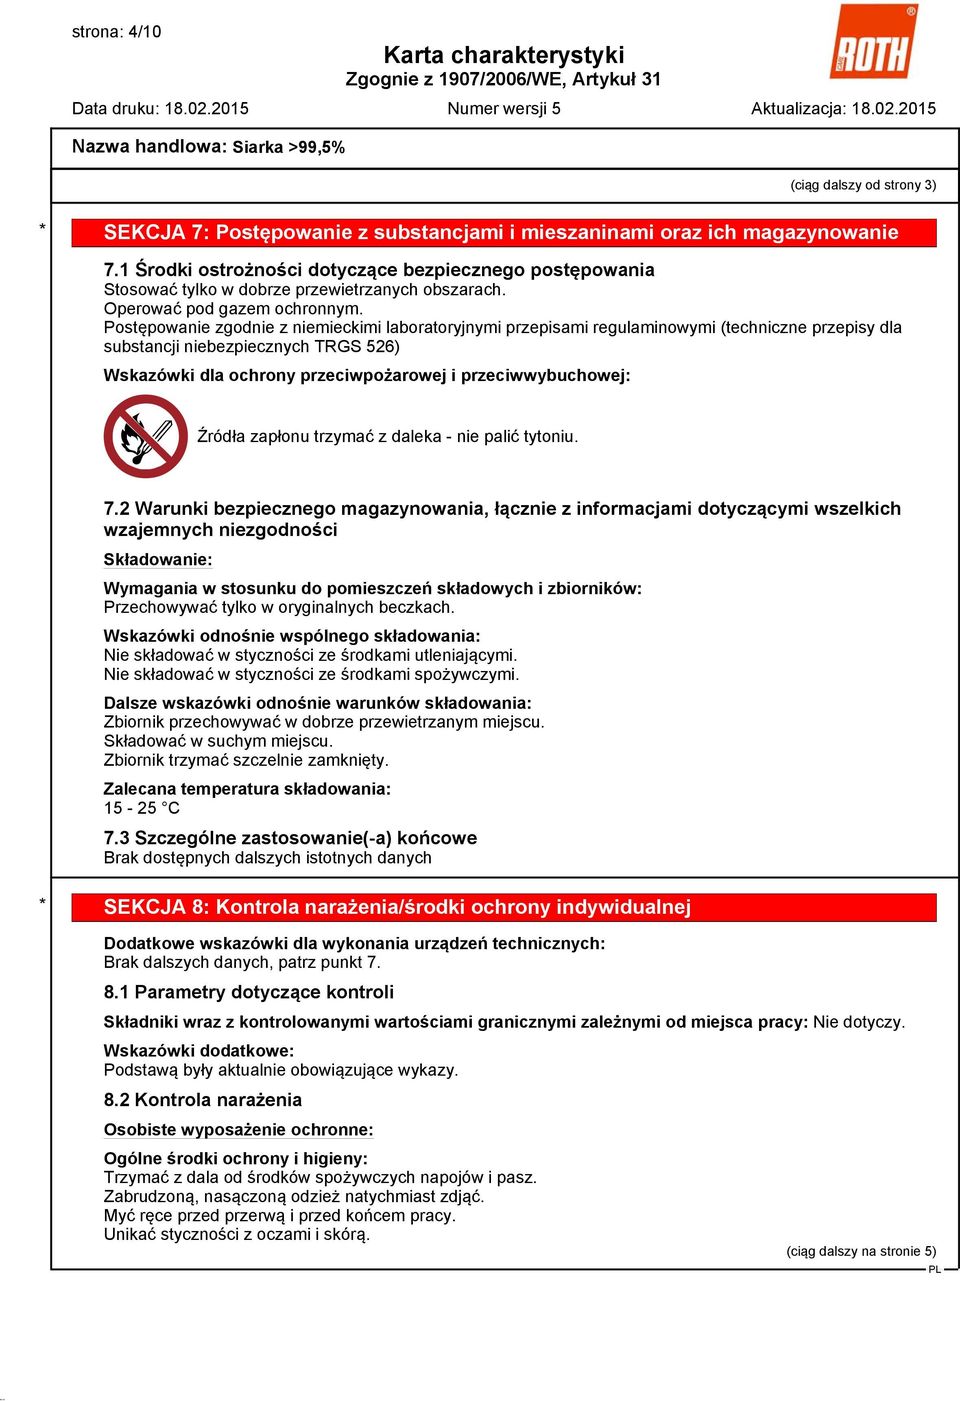 Postępowanie zgodnie z niemieckimi laboratoryjnymi przepisami regulaminowymi (techniczne przepisy dla substancji niebezpiecznych TRGS 526) Wskazówki dla ochrony przeciwpożarowej i przeciwwybuchowej: